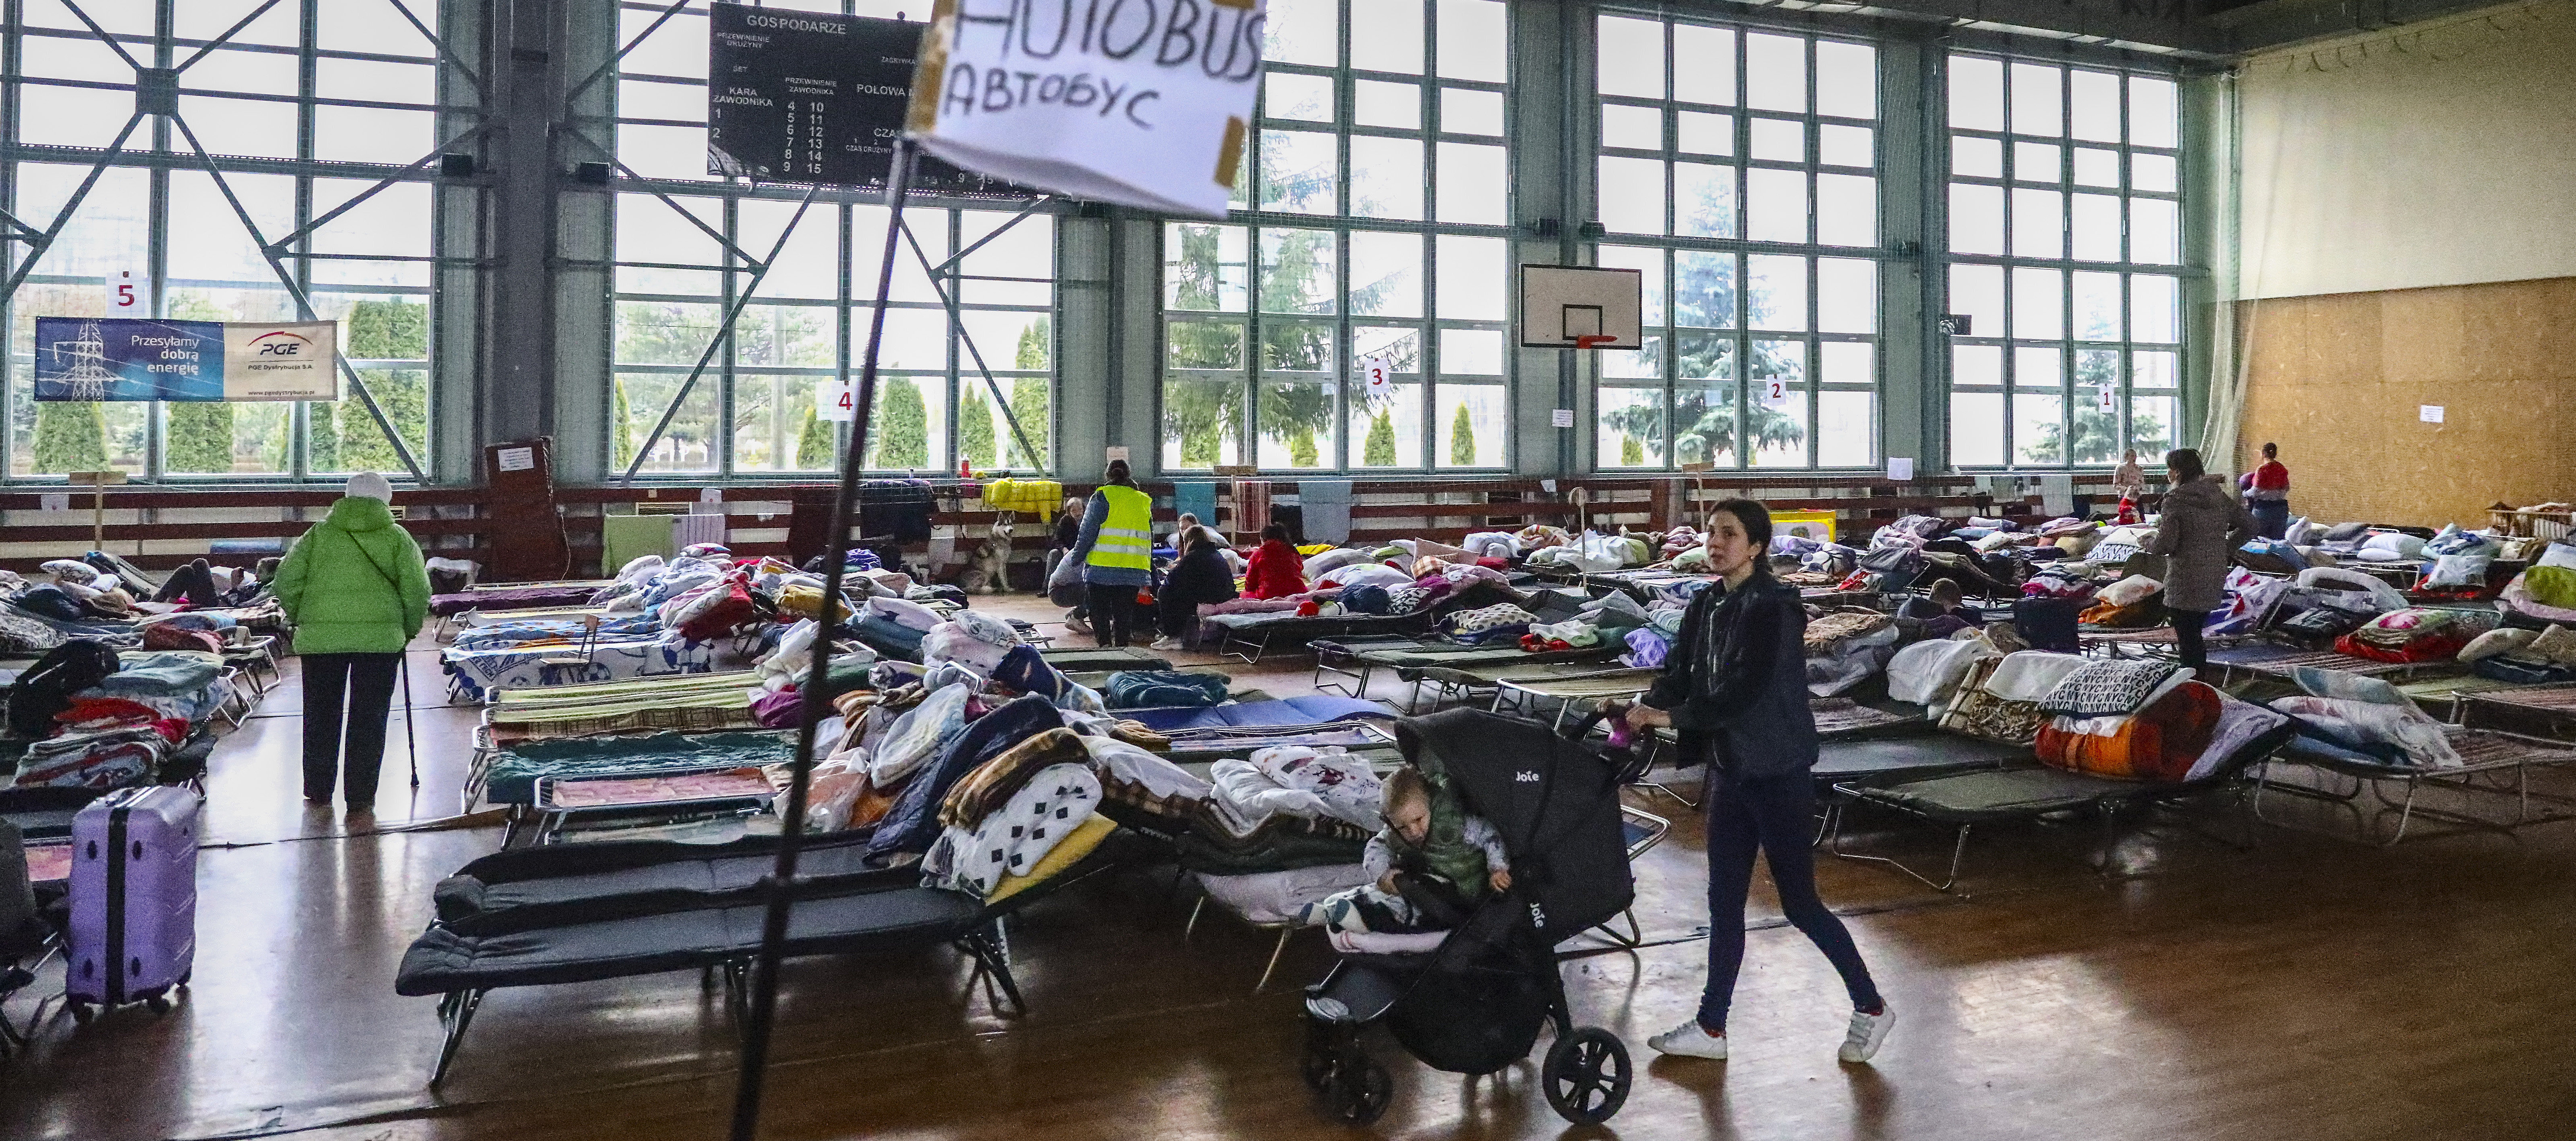 Flüchtlinge aus der Ukraine in einer Sporthalle in Polen. Feldbetten und ein Schild "Autobus" und Kinderwägen sind zu sehen.